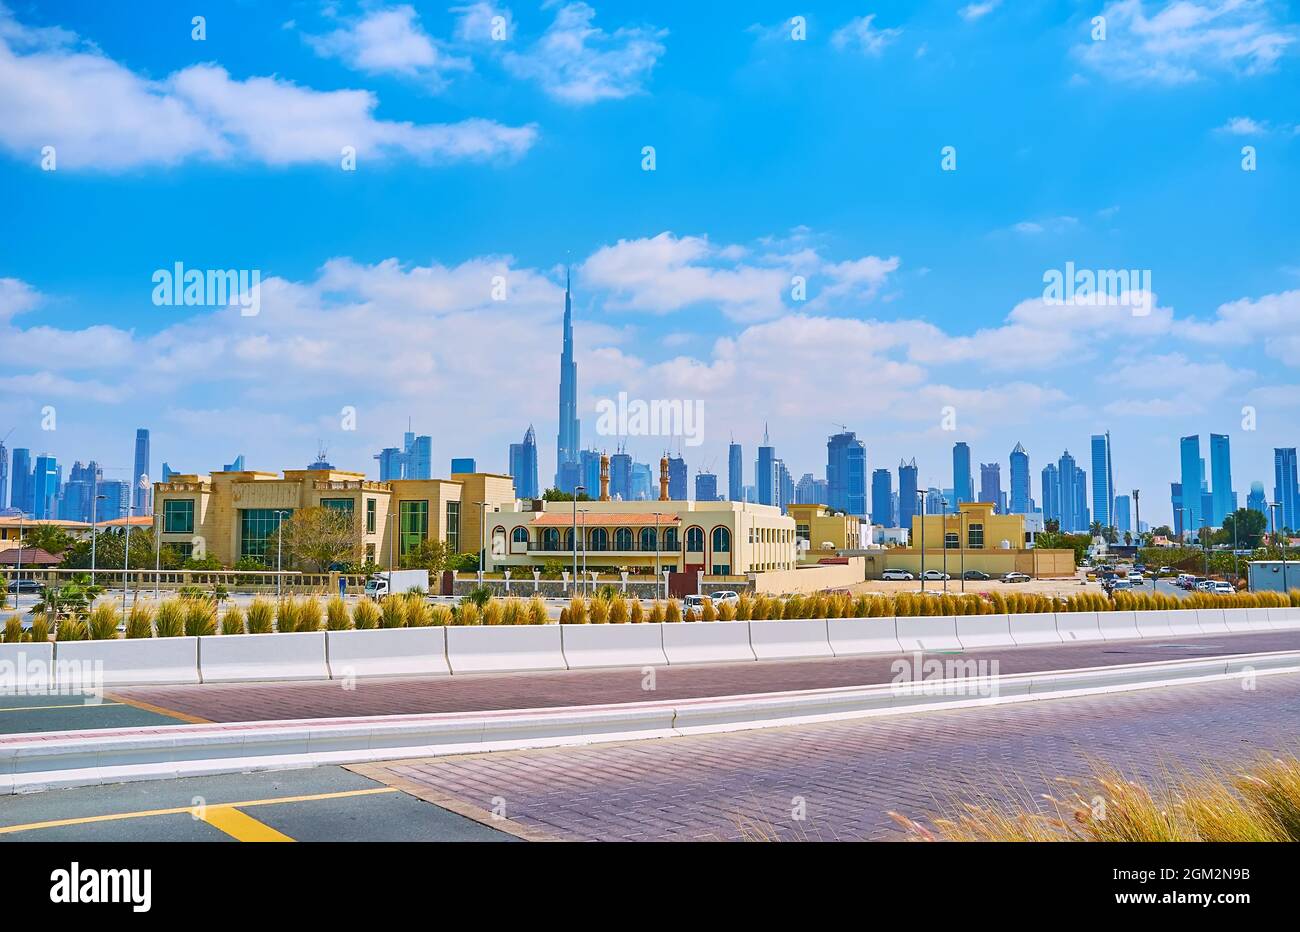 Il pittoresco skyline futuristico di Dubai con grattacieli di vetro del centro con Burj Khalifa nel mezzo, vista da Jumeirah Beach Road, Dubai, Foto Stock